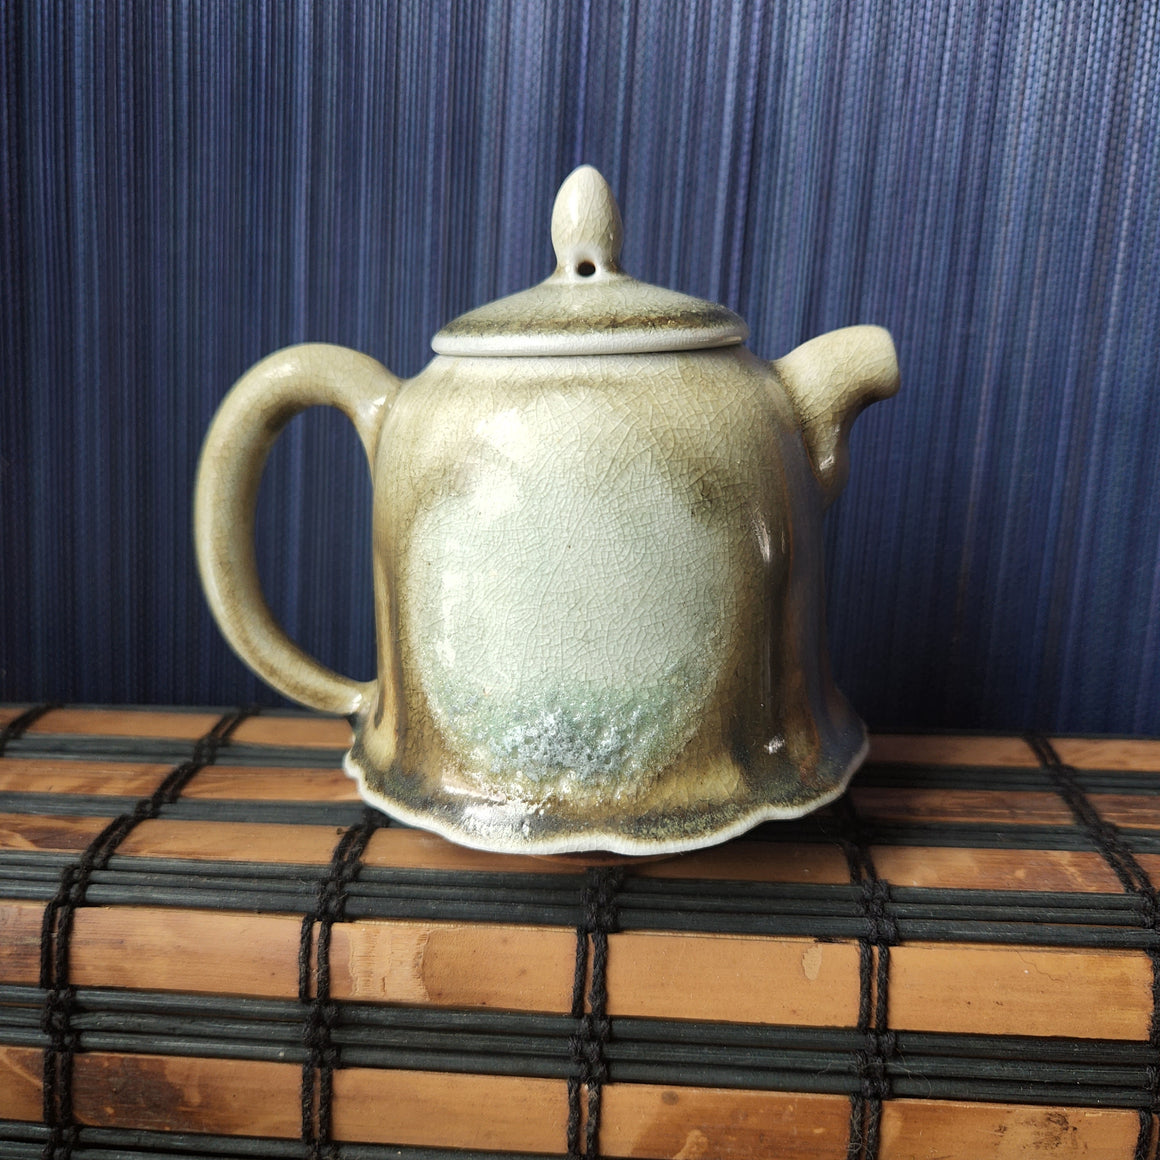 Mashalu Wood-Fired Teapot #9, 150ml